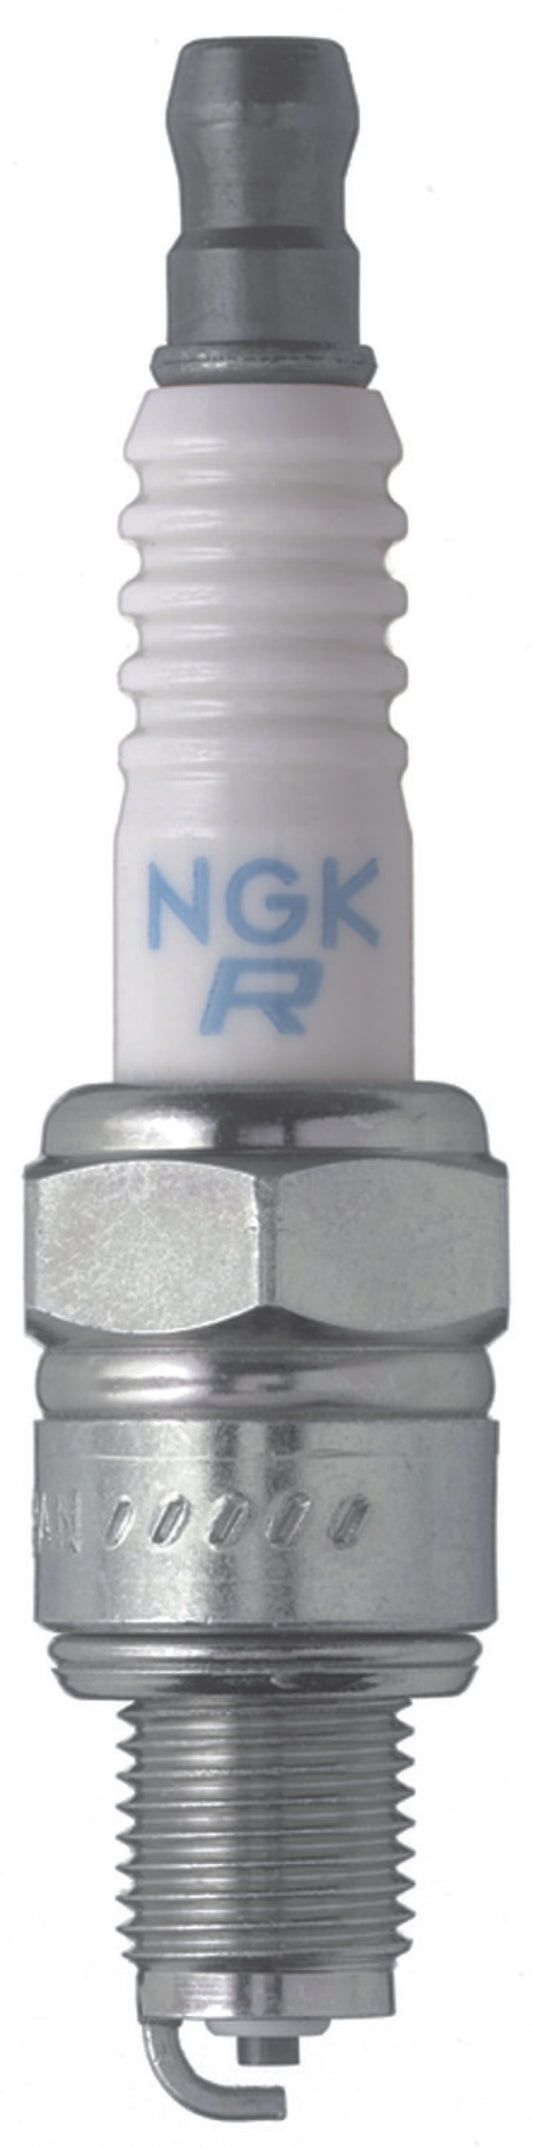 NGK Standard Spark Plug Box of 10 (CR6HSB)